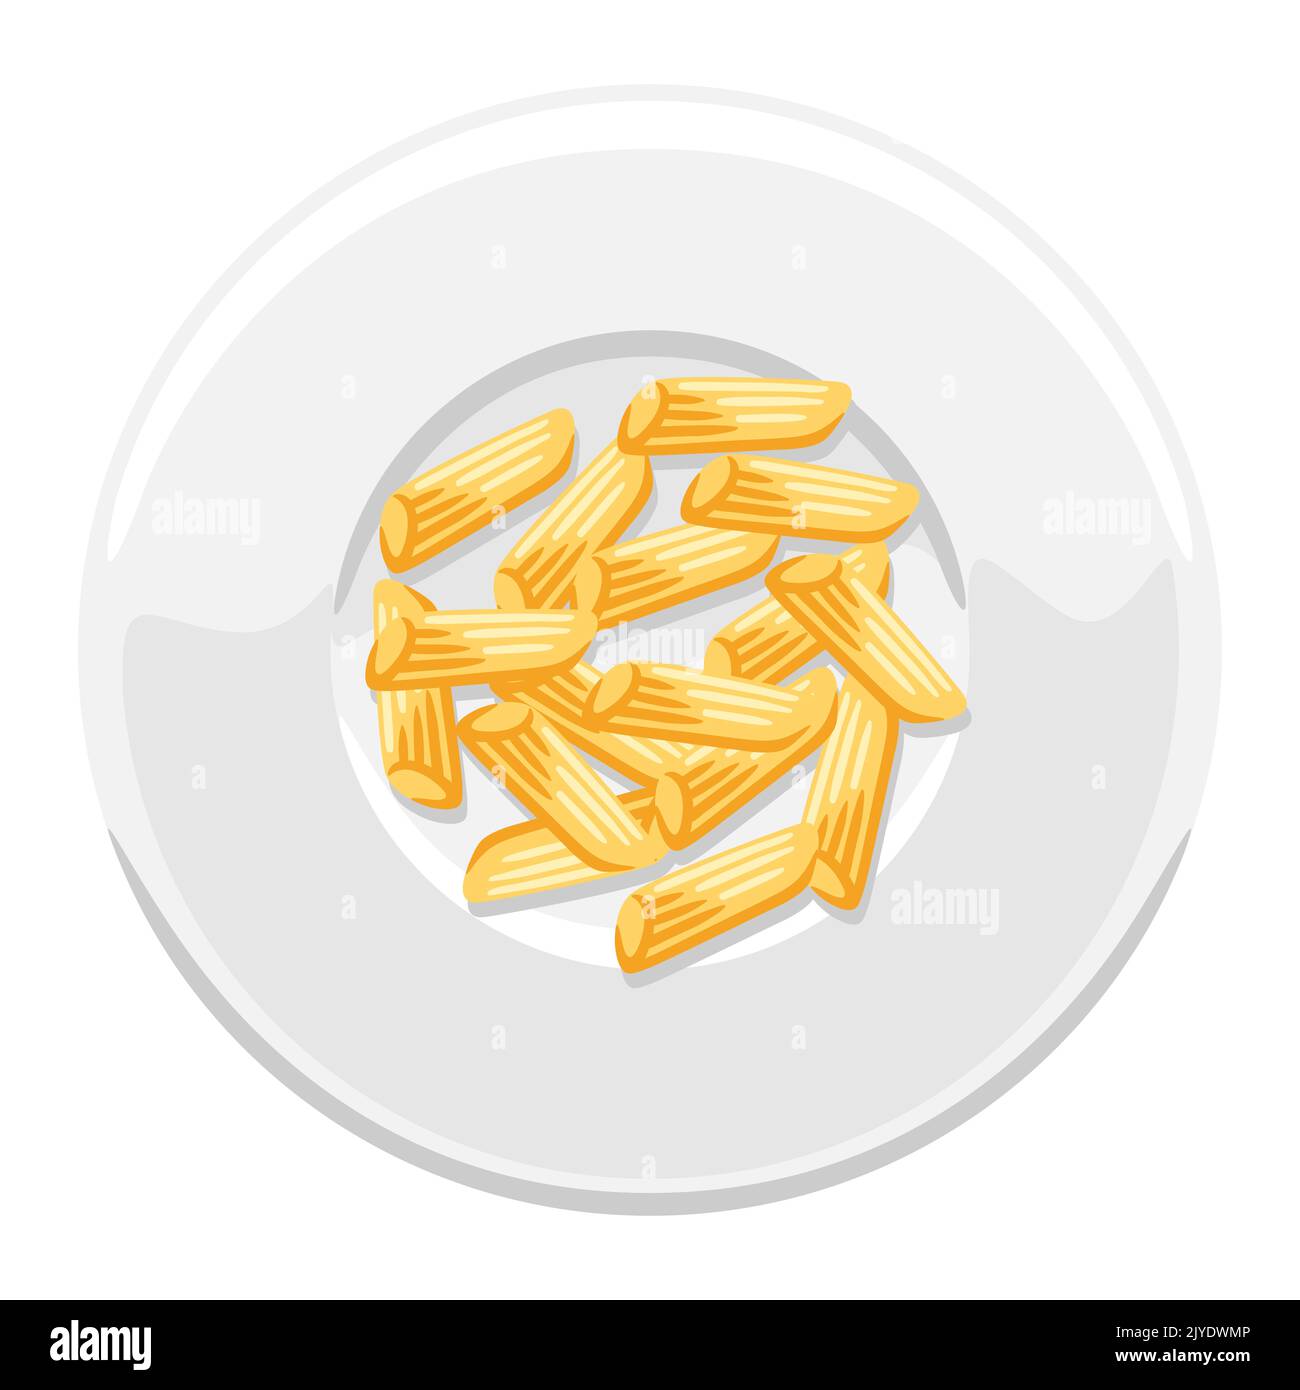 Illustrazione della penna di pasta italiana sul piatto. Immagine culinaria per menu e ristoranti. Illustrazione Vettoriale